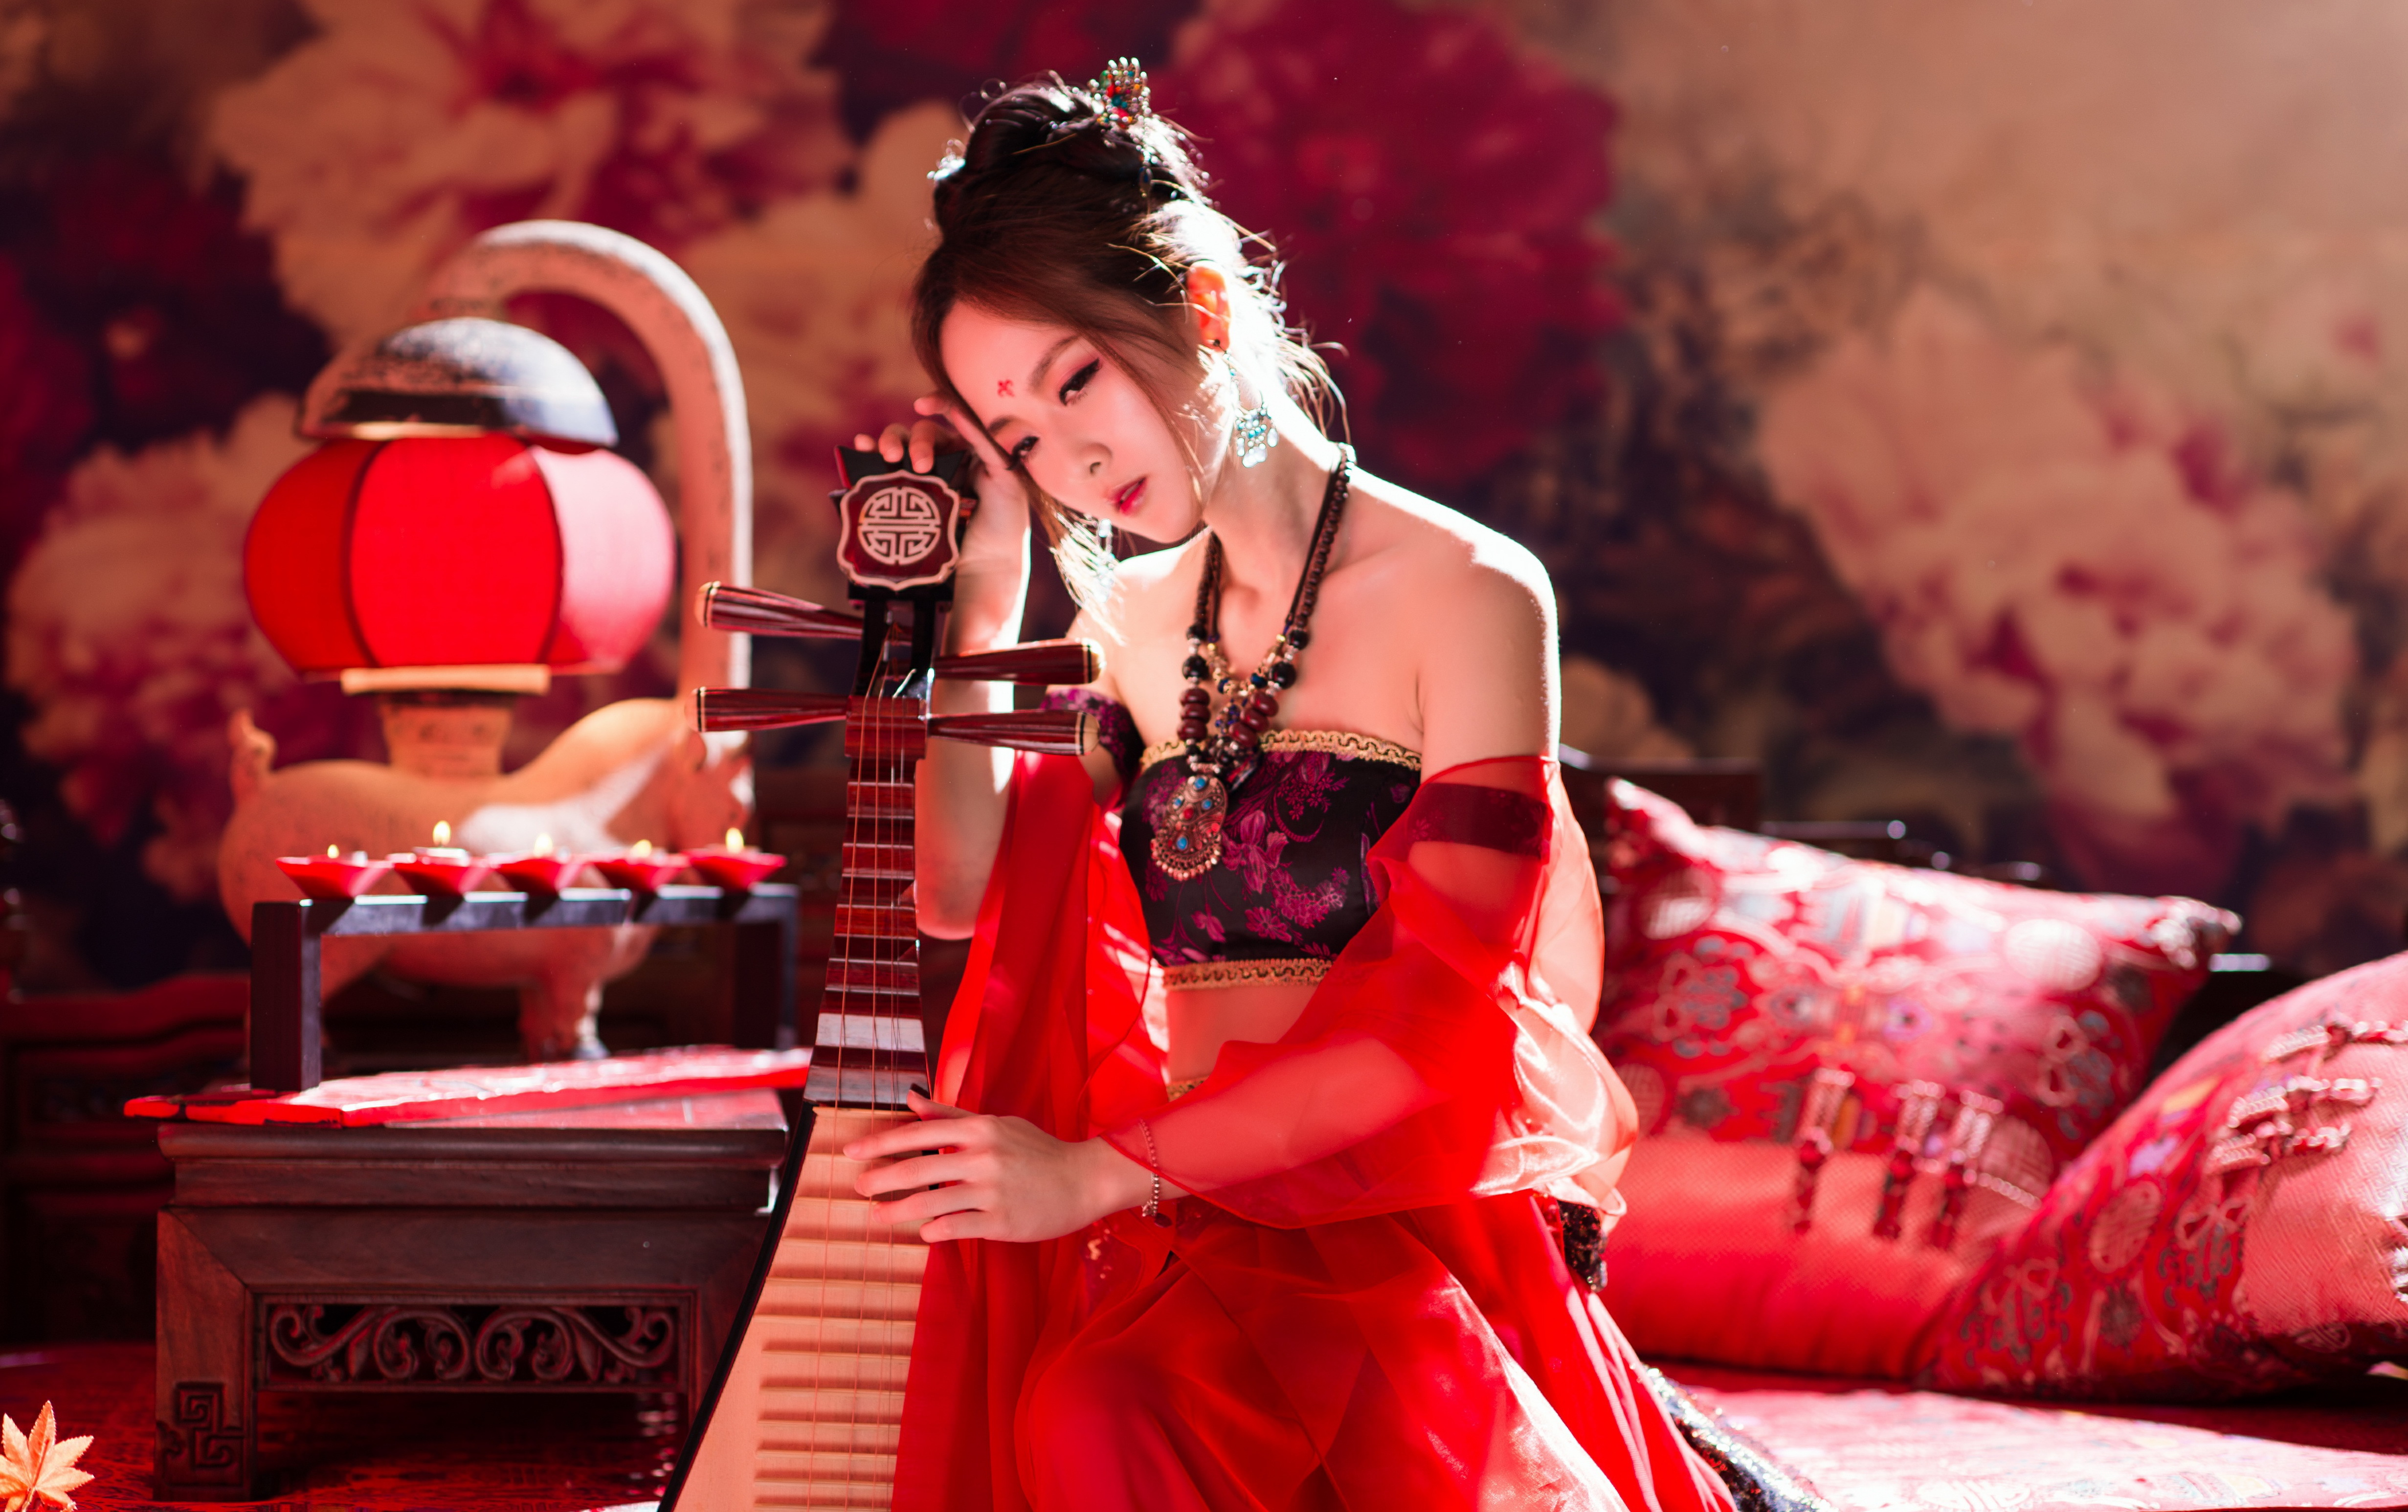 Китайский песнь. Китайские девушки с инструментом музыкальным. Китайская мелодия. Айдол с музыкальным инструментом. Китайские девушки танцуют.